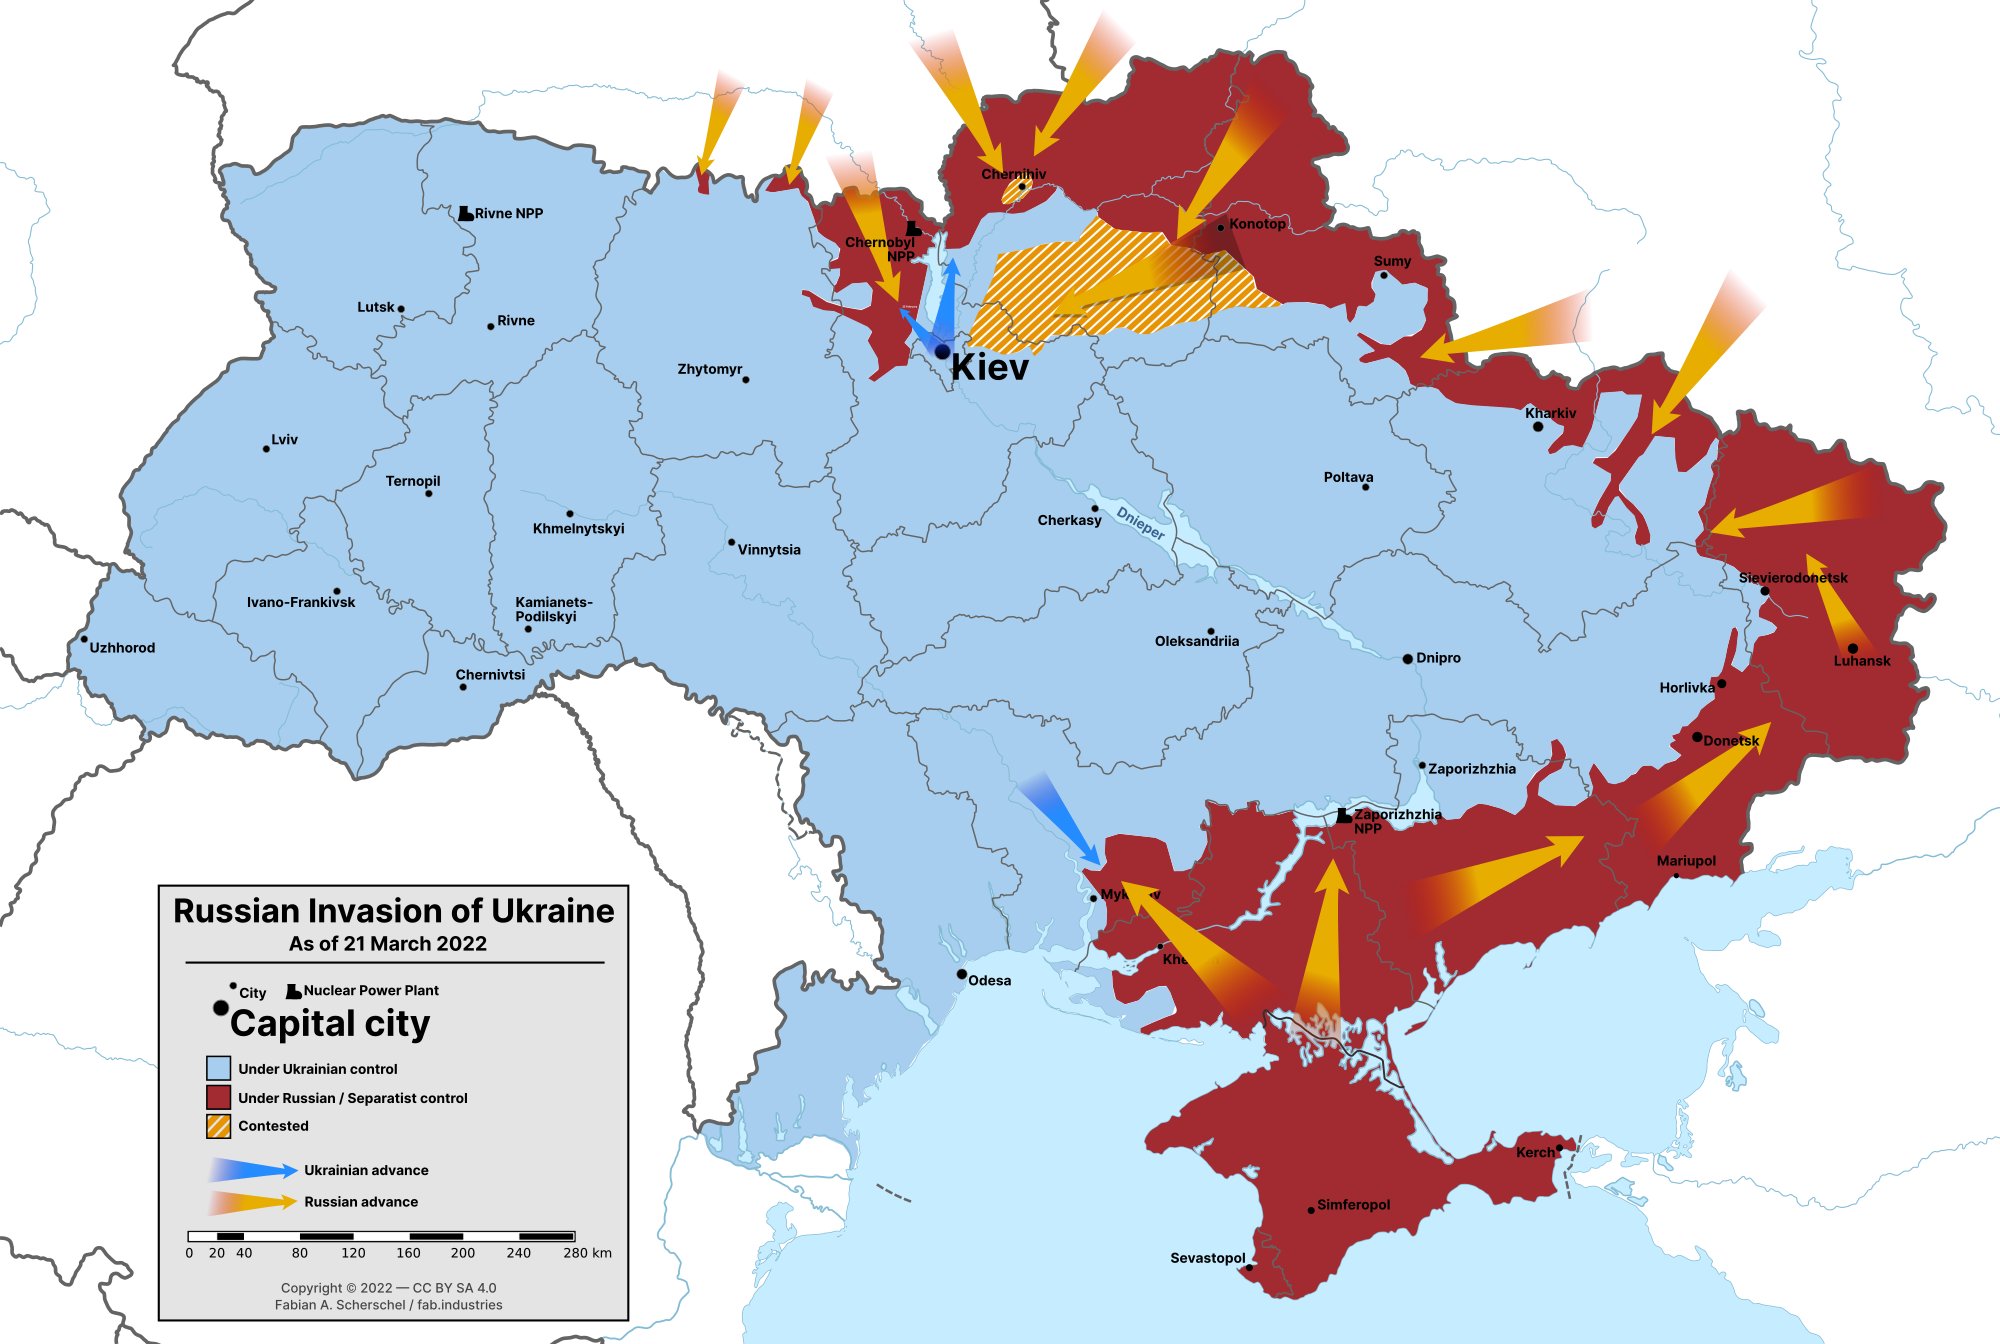 Rebelião armada: confira mapa com cidade russa de Rostov-no-Don, onde estão  forças do Grupo Wagner - 24.06.2023, Sputnik Brasil